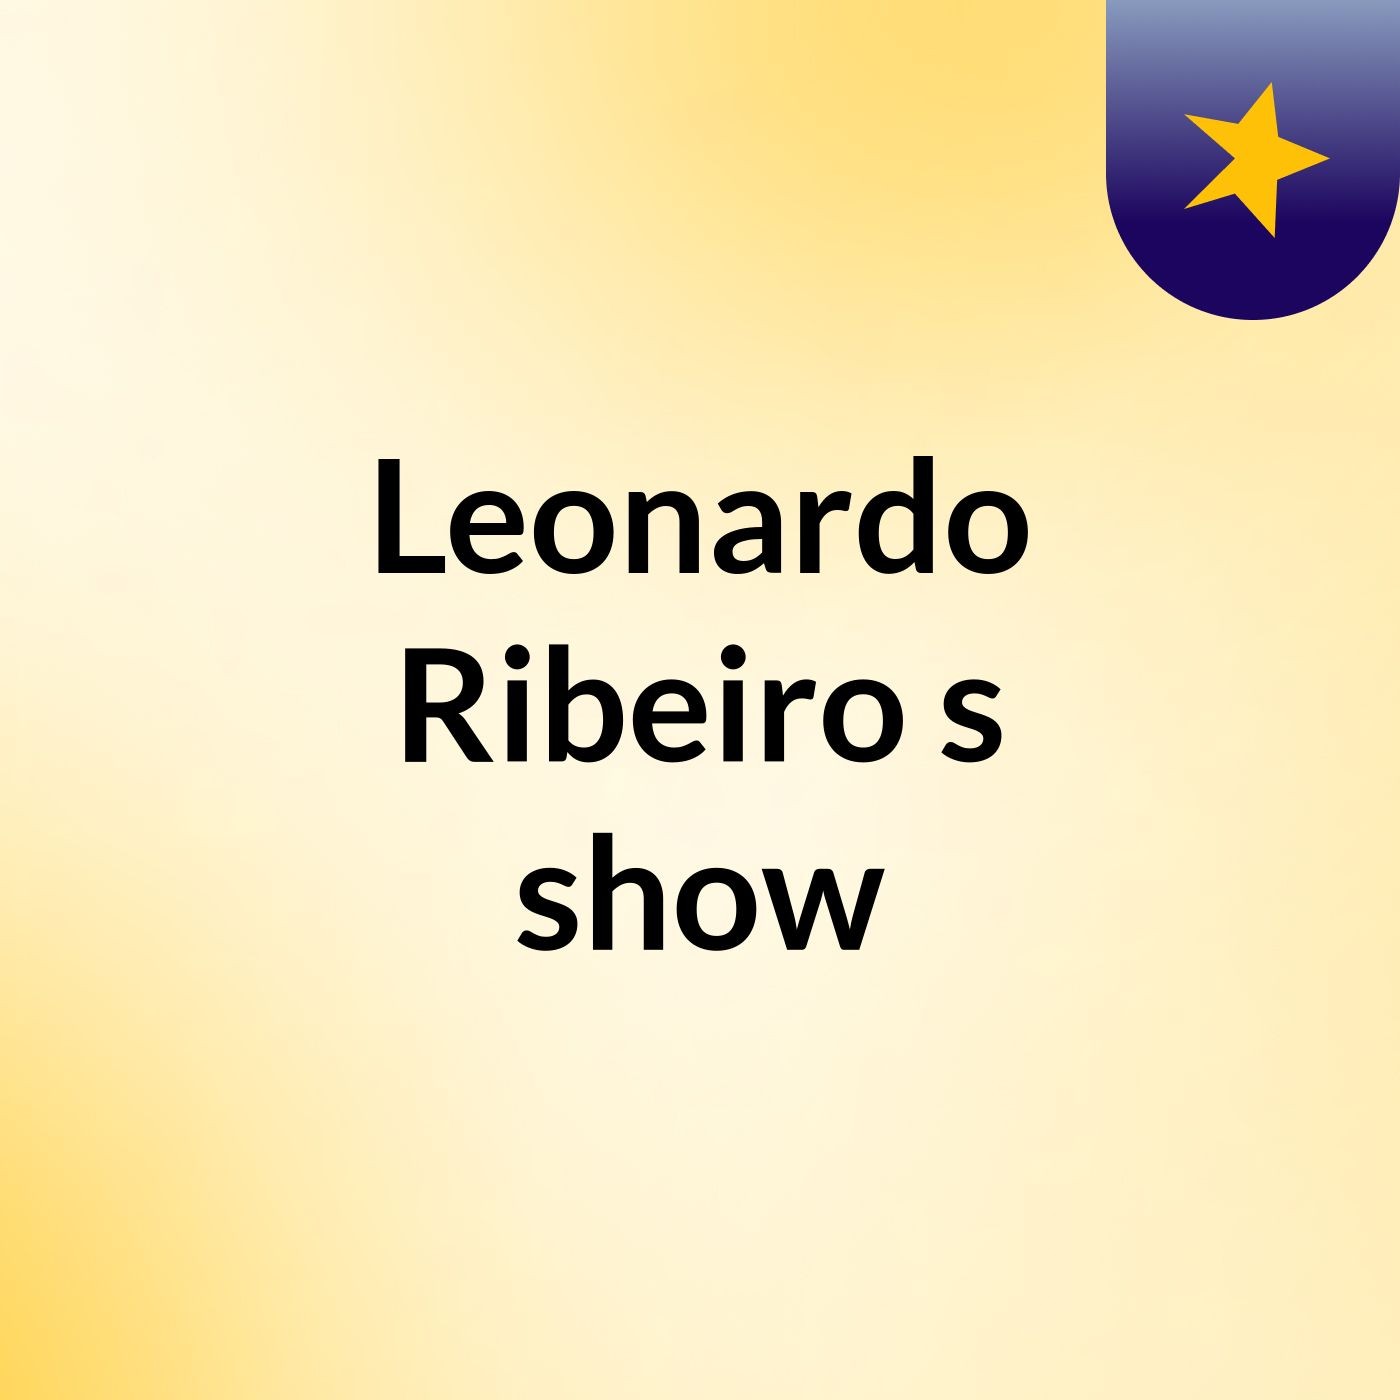 Leonardo Ribeiro's show